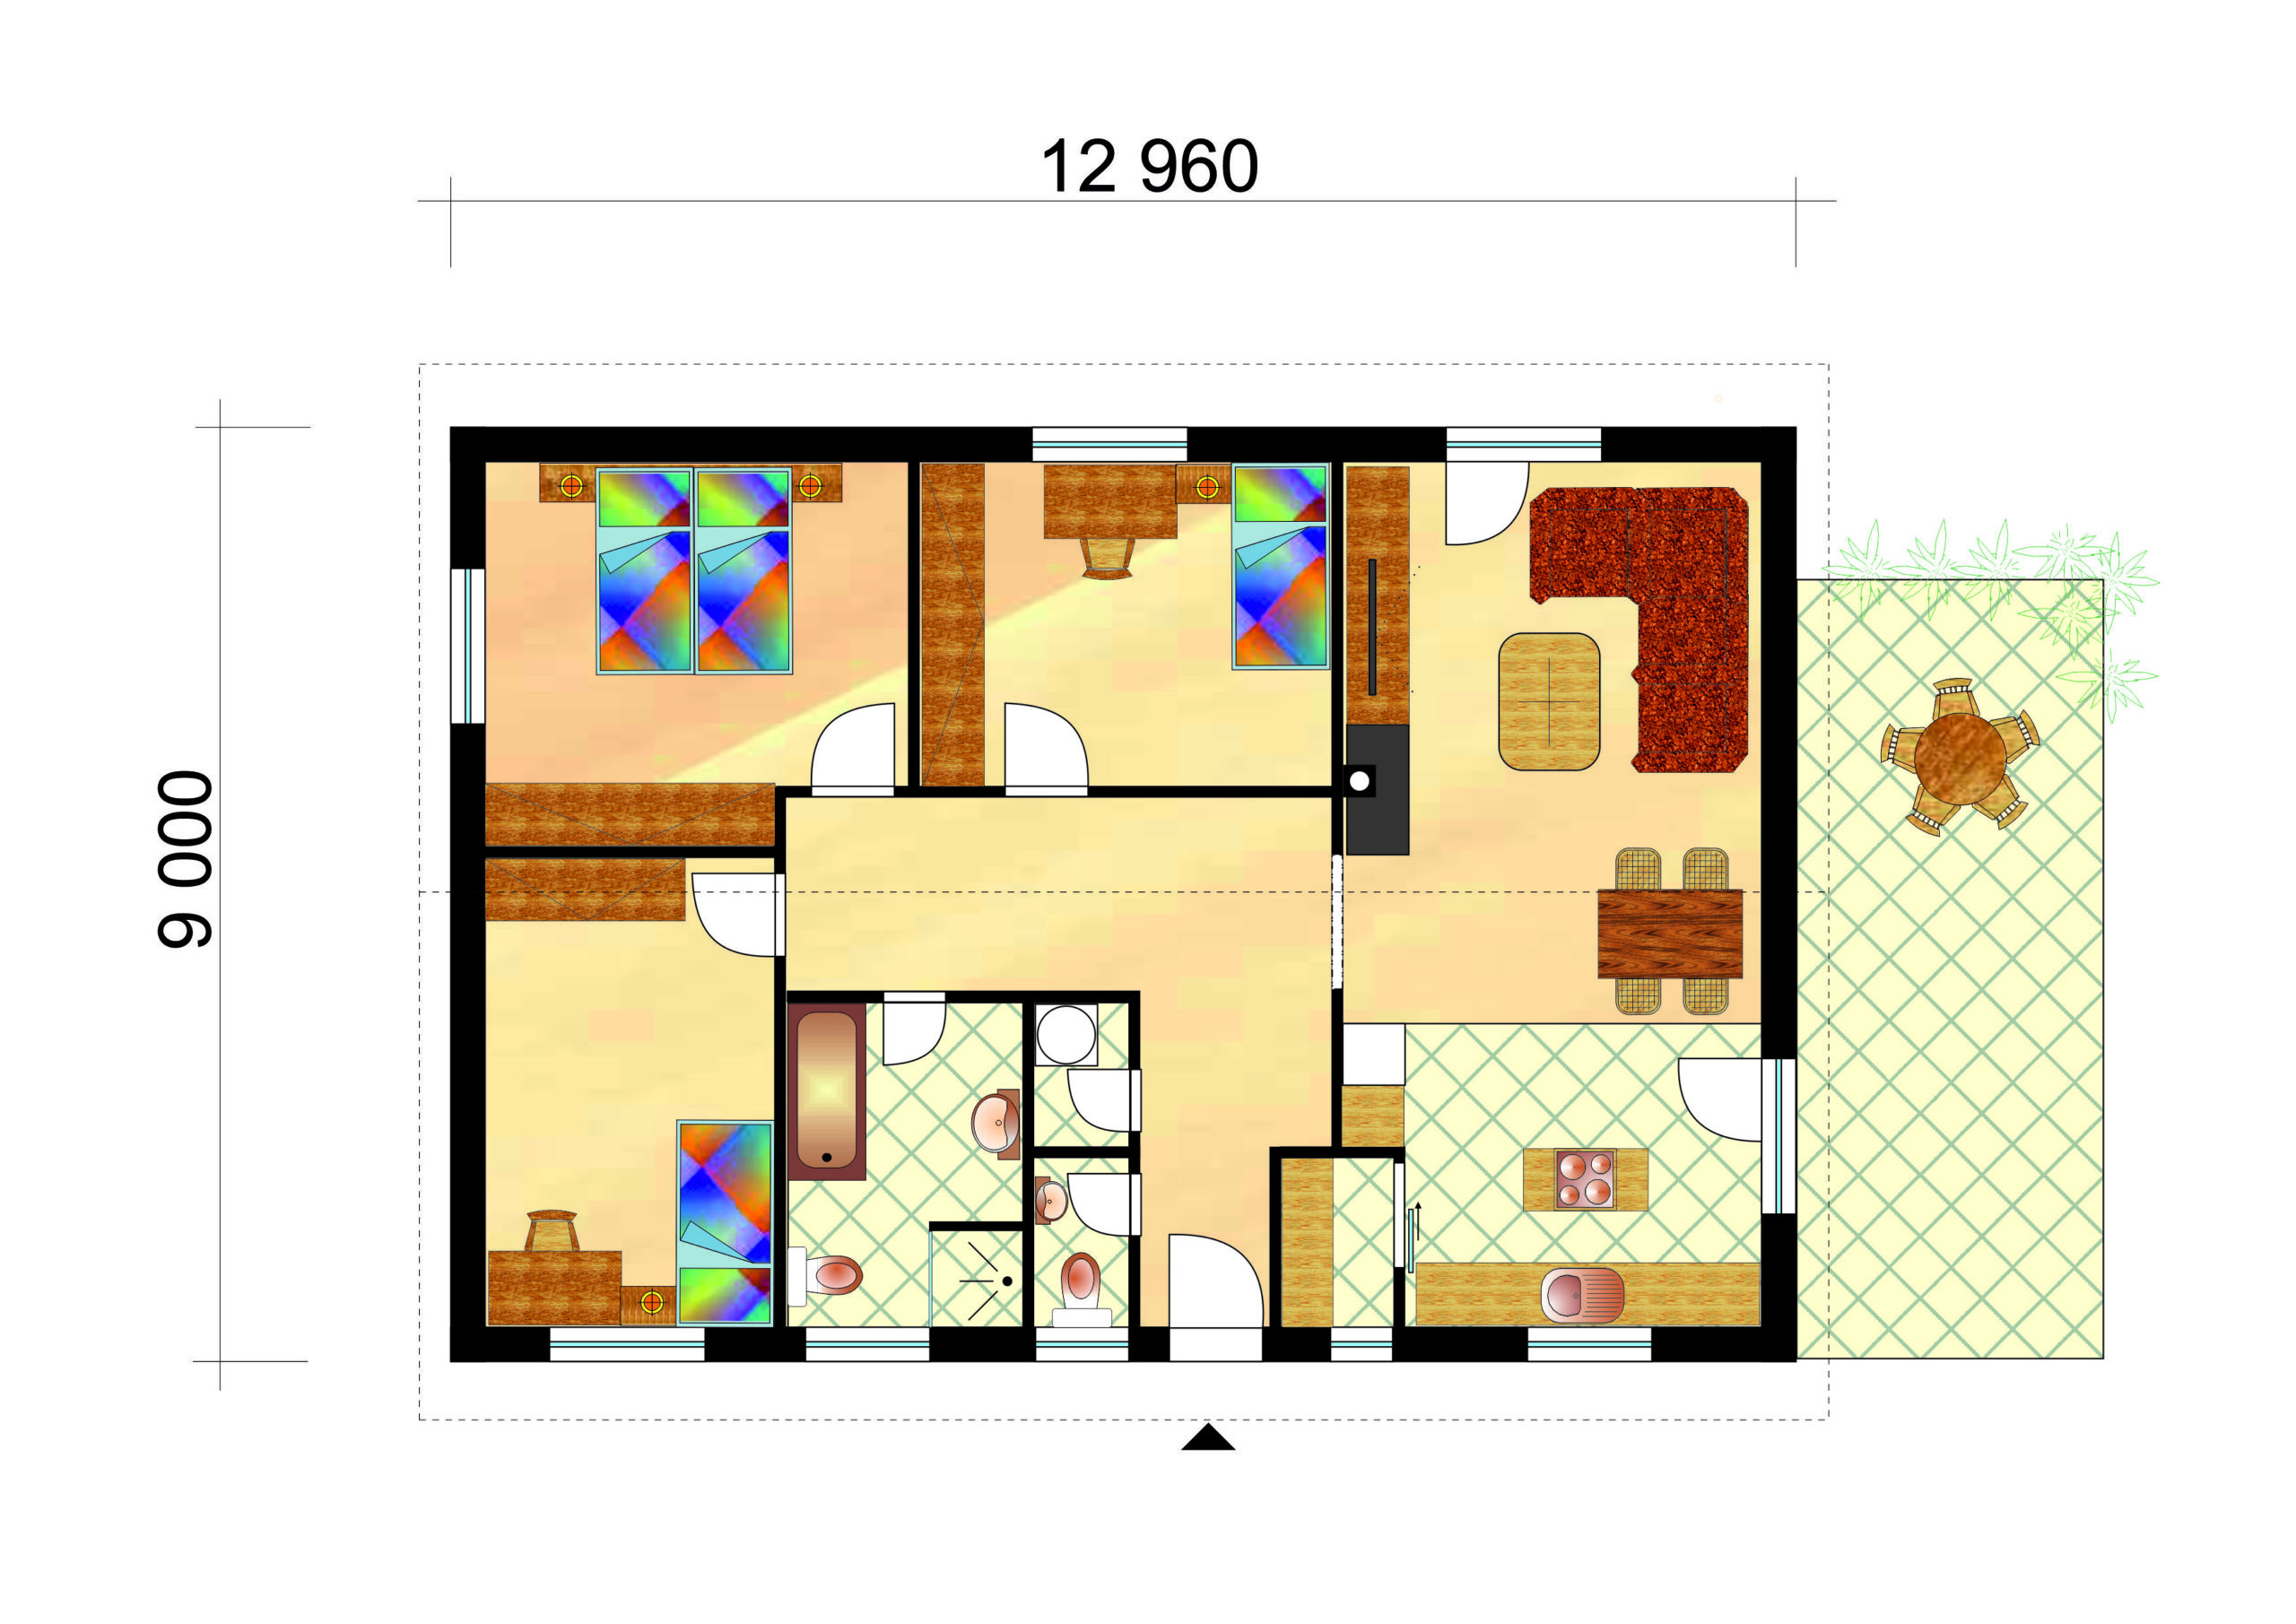 Kedvelt családi ház három hálószobával - sz.31, alaprajza, raktáron elérhető